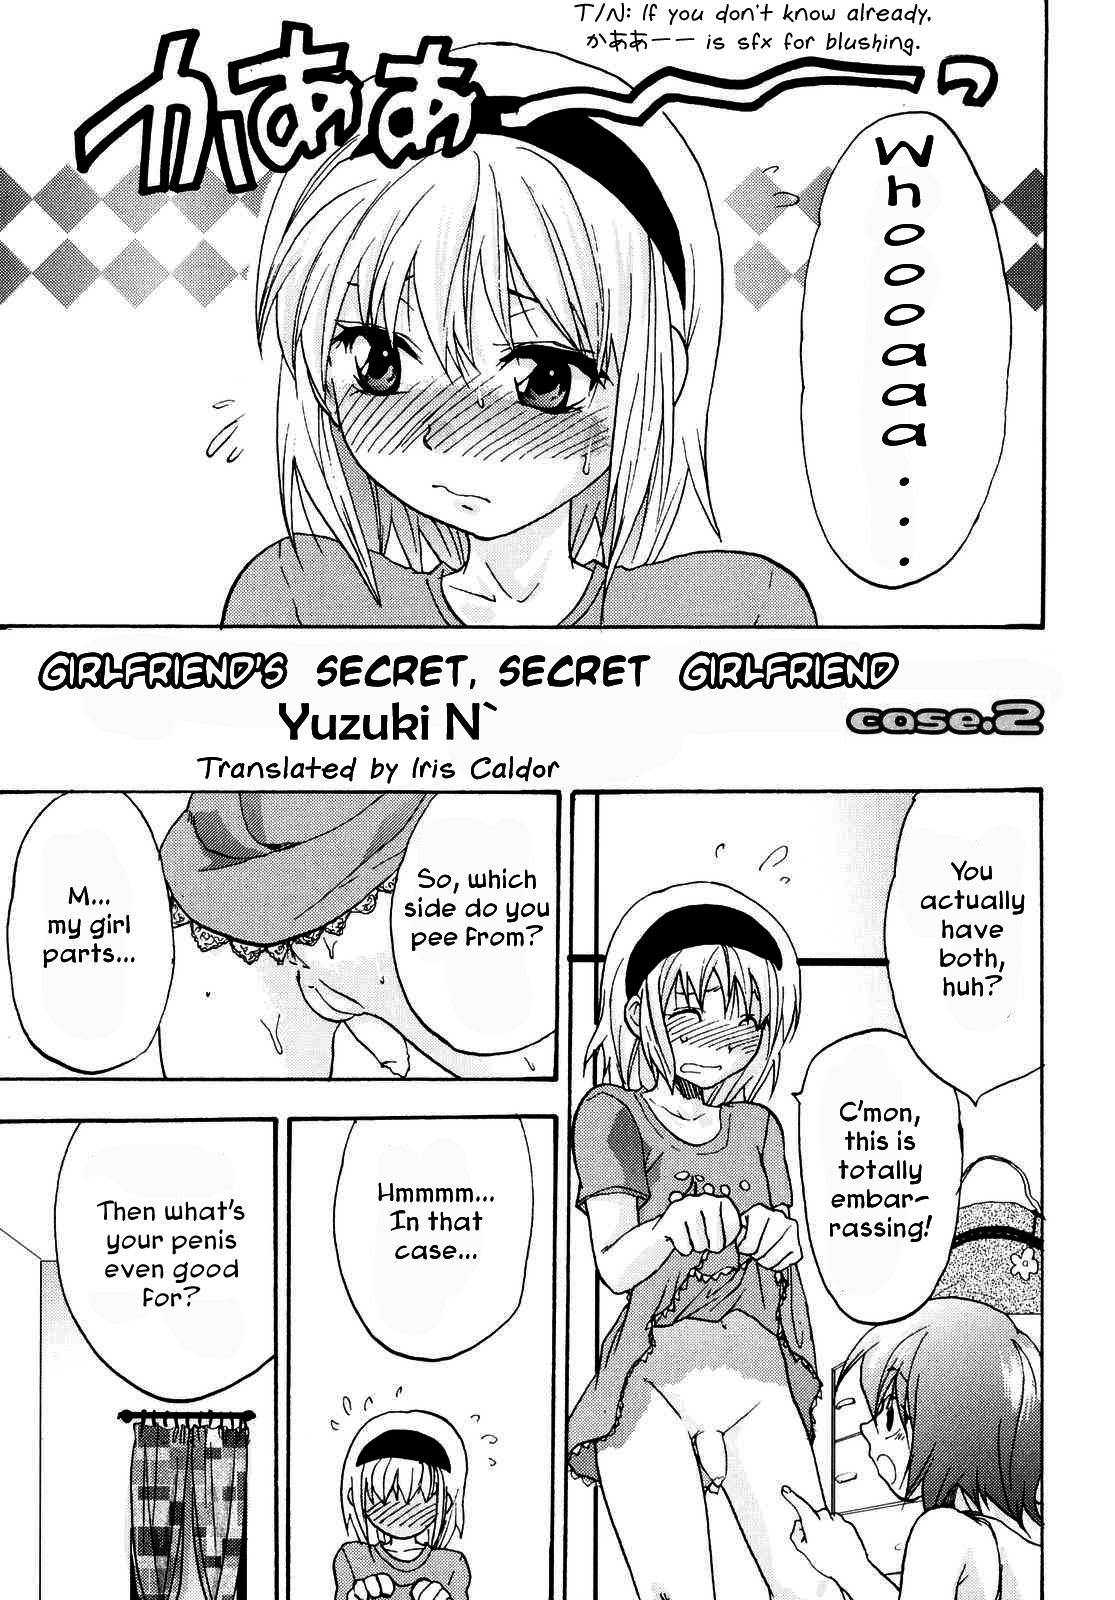 Kanojo no Himitsu to Himitsu no Kanojo case.2 | Girlfriend's Secret, Secret Girlfriend - Case 2 1